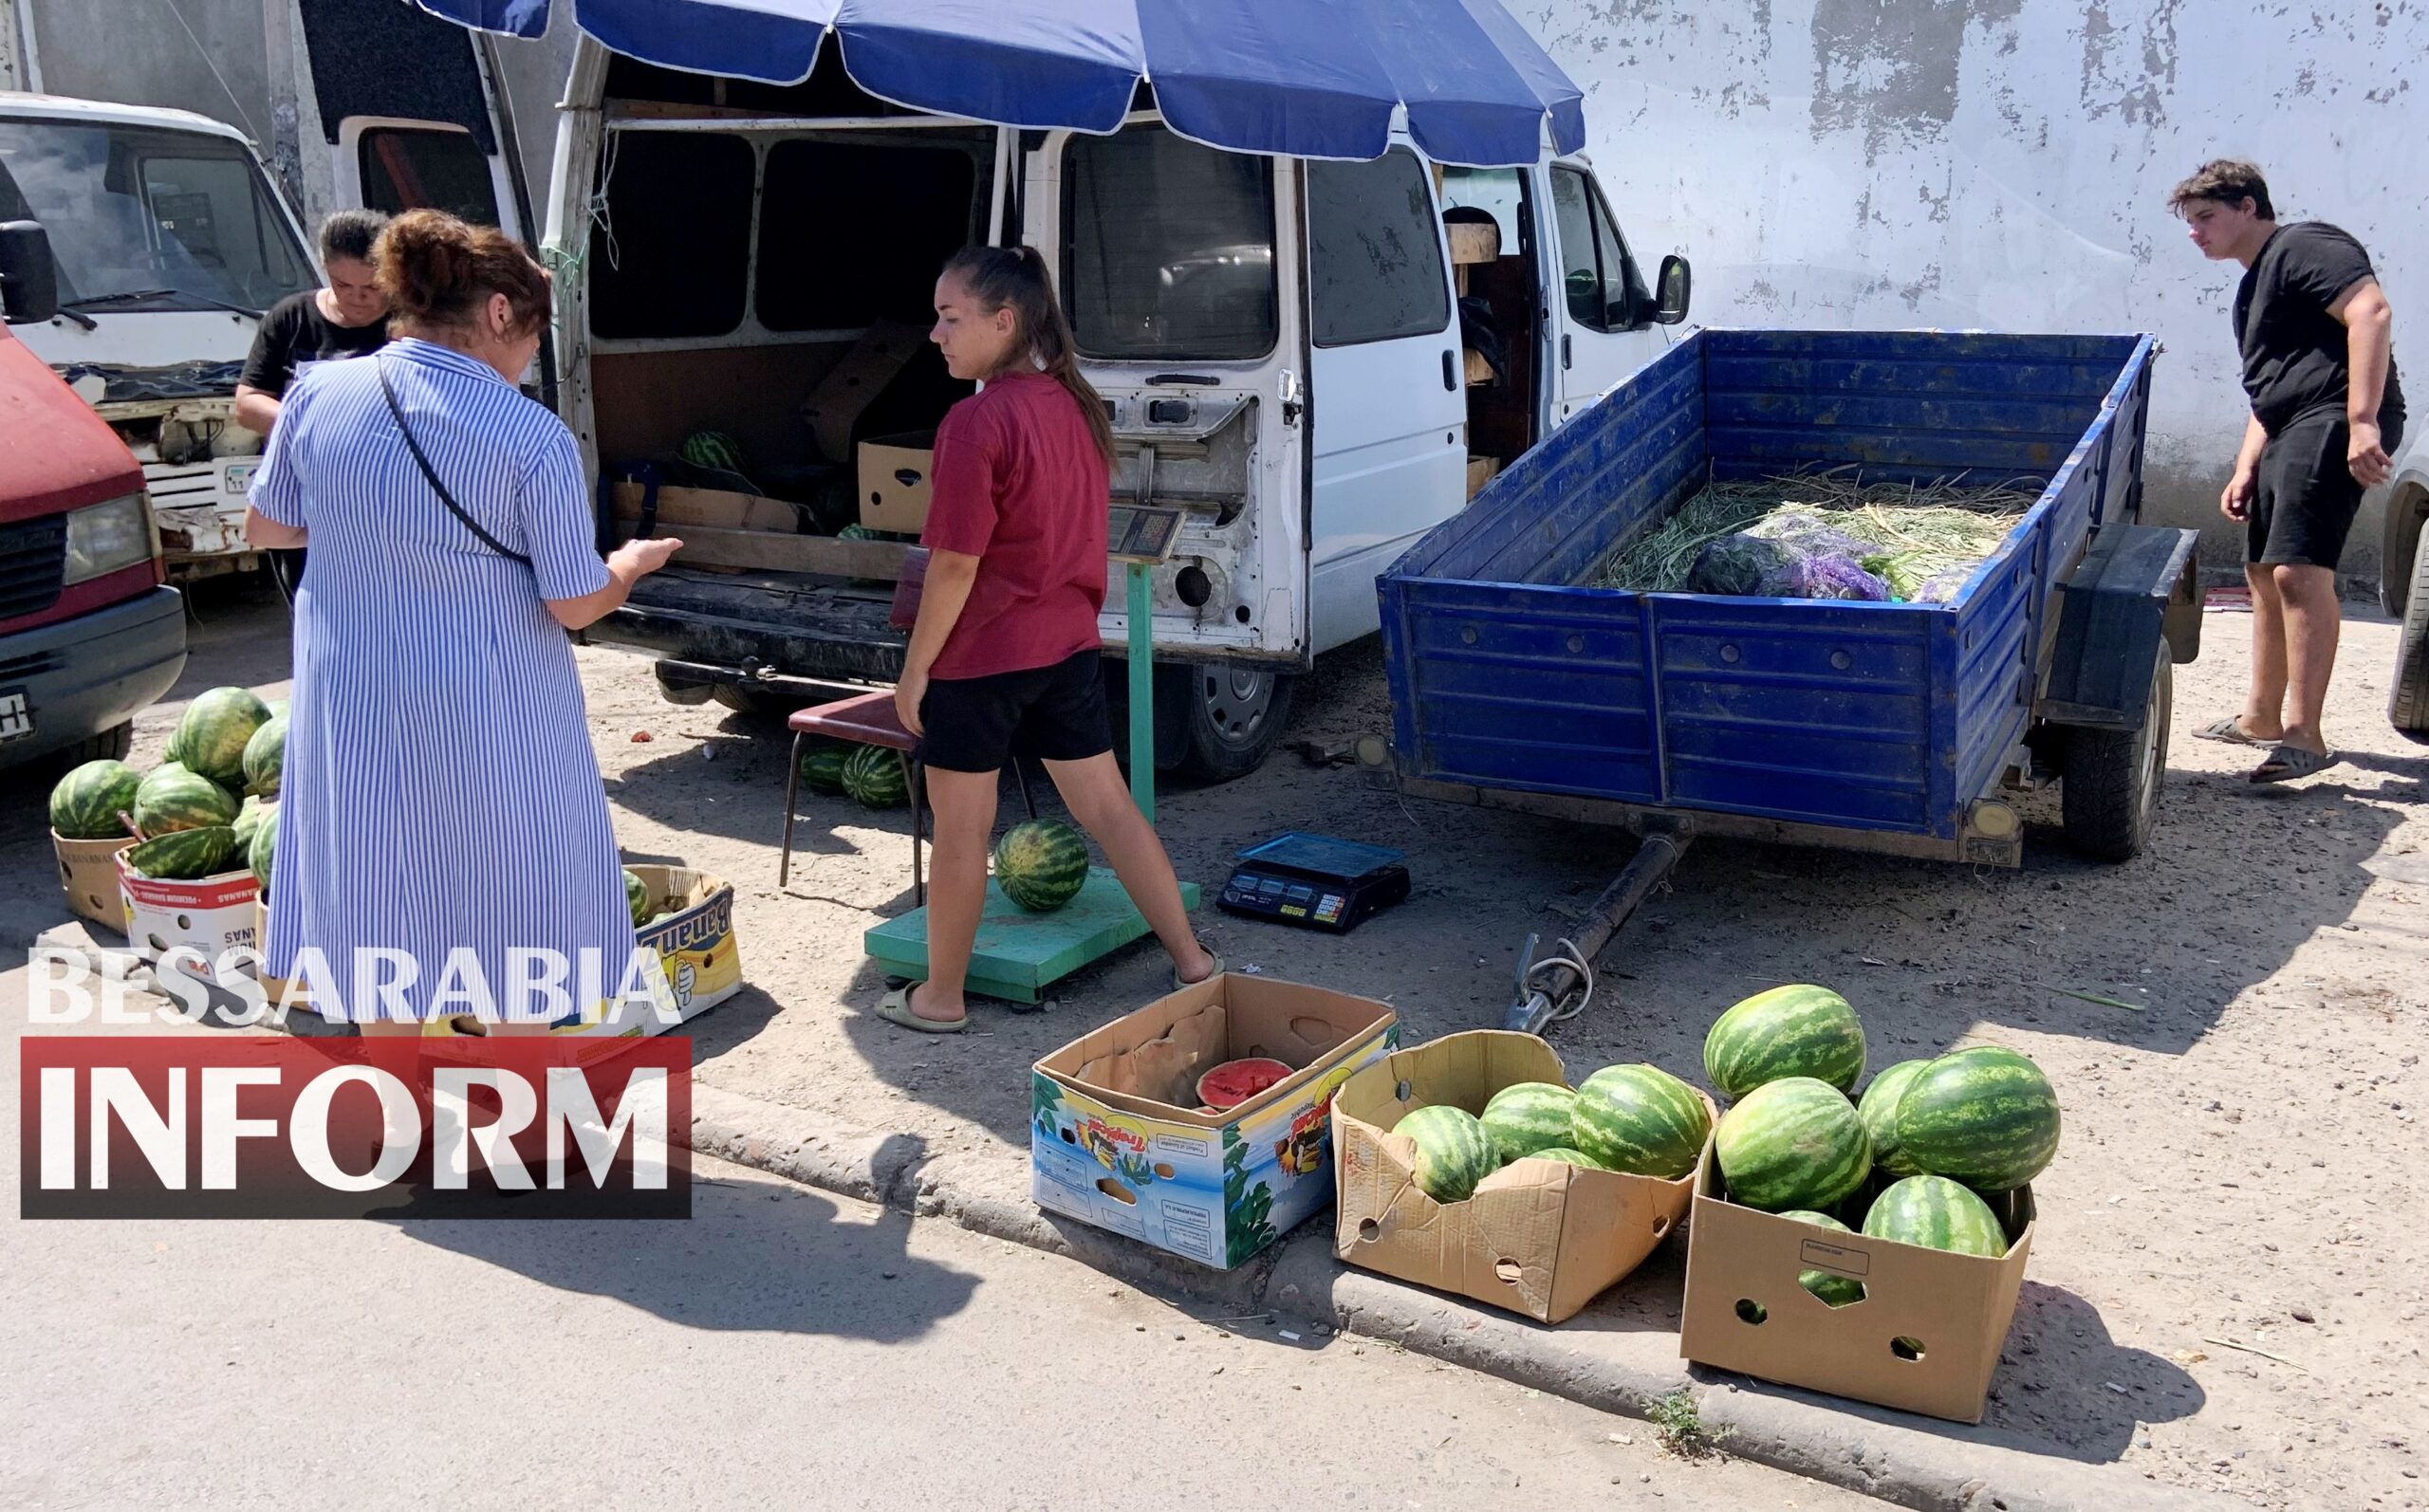 Сезон налитых южным солнцем арбузов в разгаре: обзор цен на бахче в Измаиле